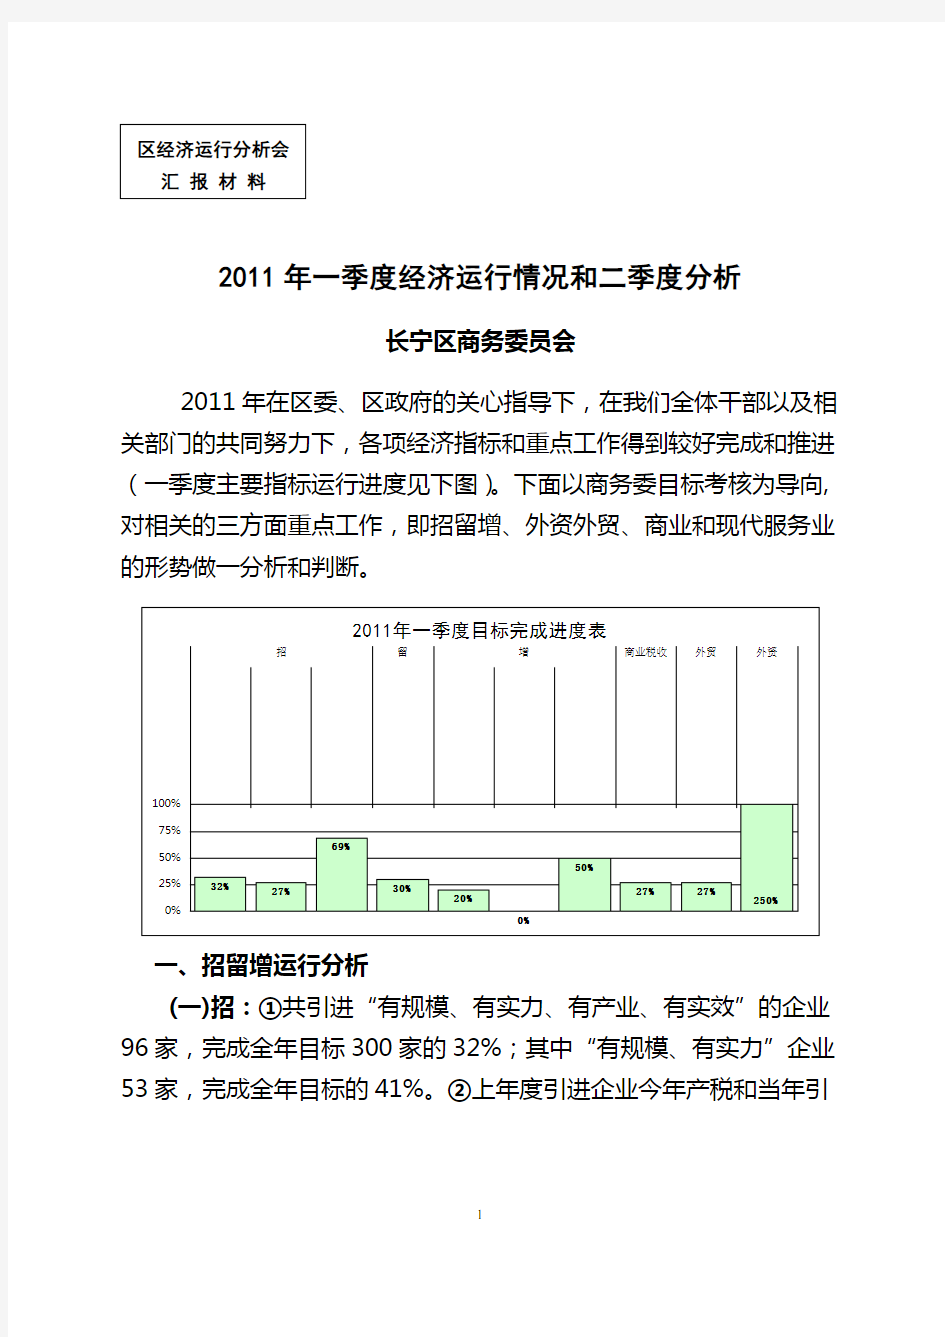 2011年一季度经济运行情况和二季度分析